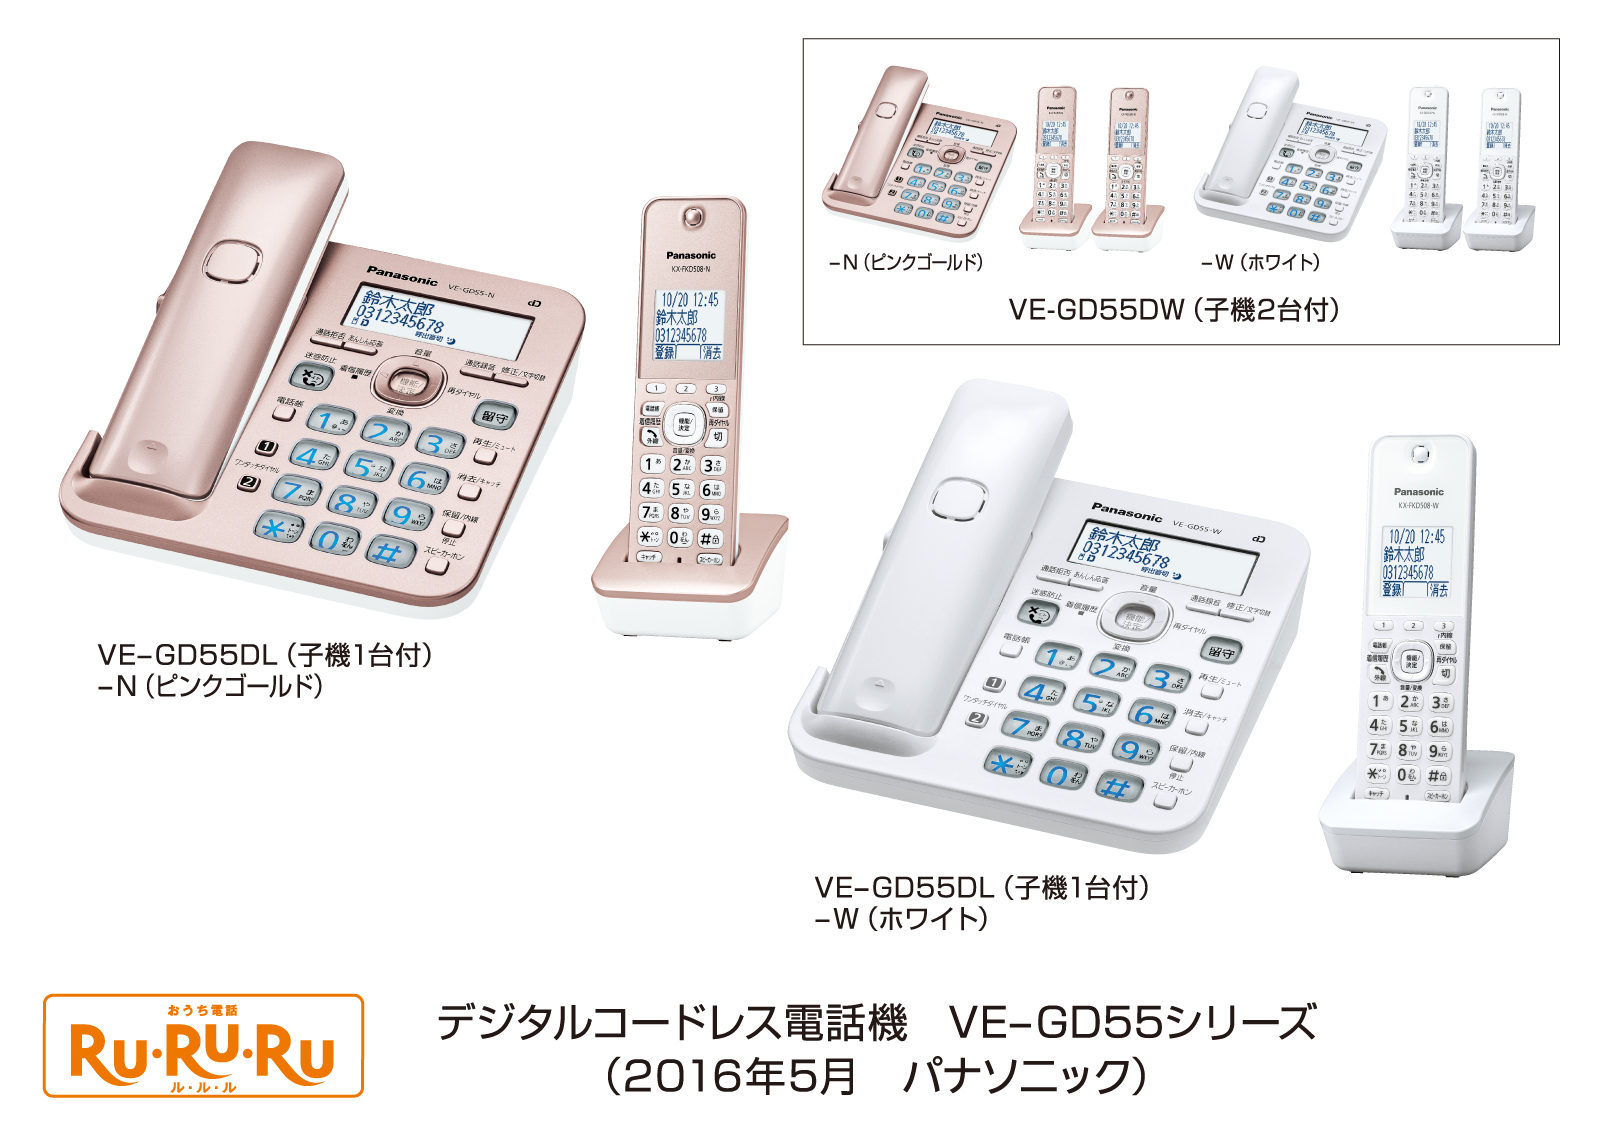 デジタルコードレス電話機「RU・RU・RU」 VE-GD55シリーズ